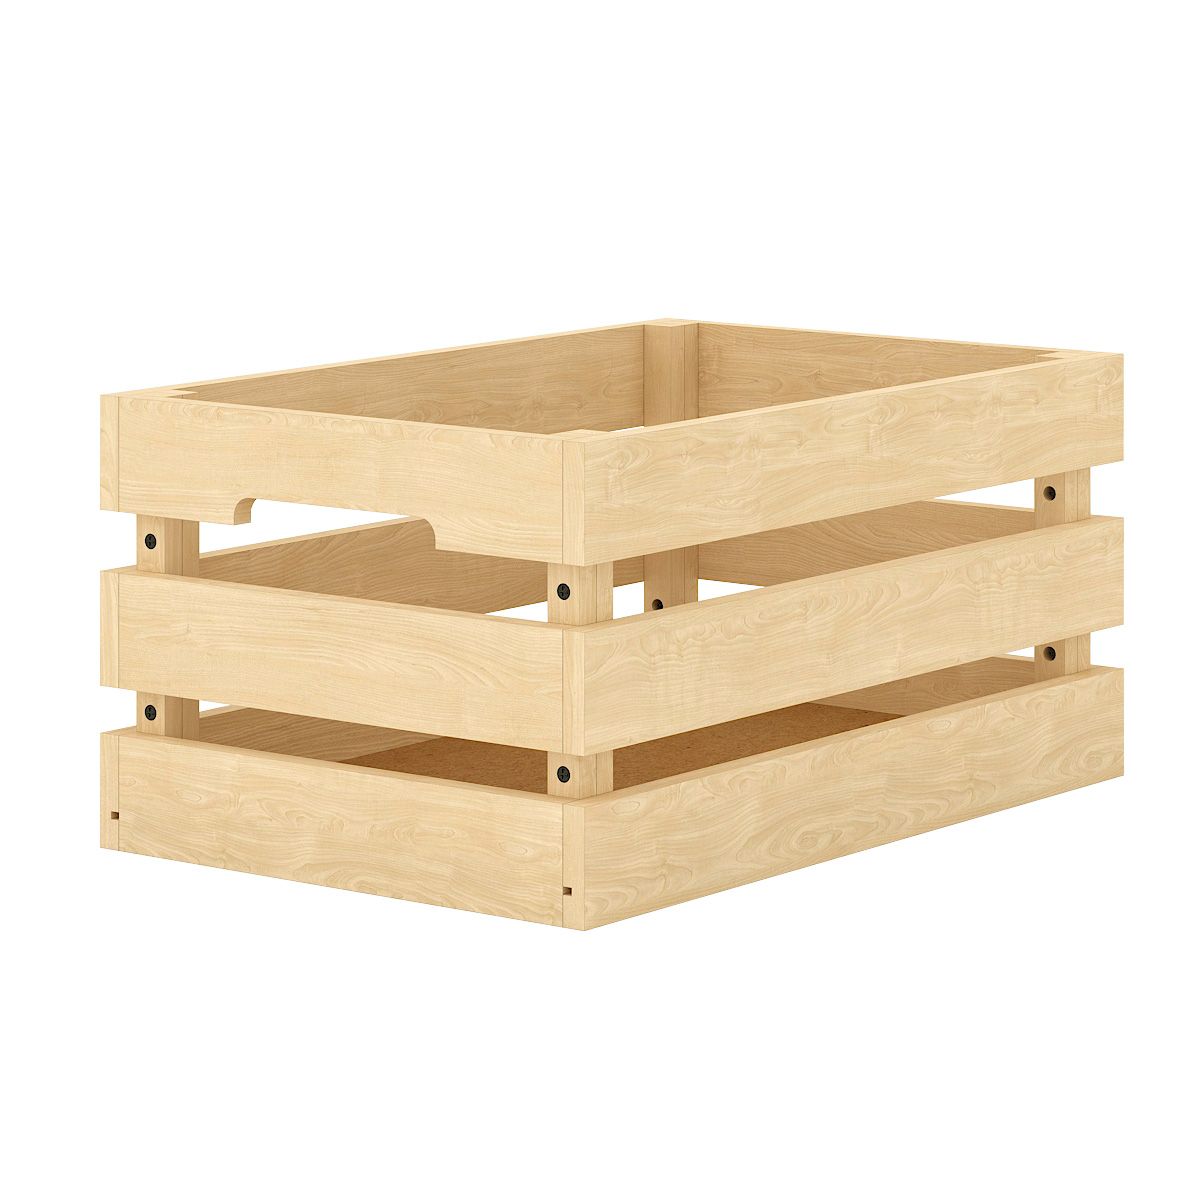 Ящик для хранения деревянный, неокрашенный, 37х24х18 см, сосна, KD-028-109 KD-028-109